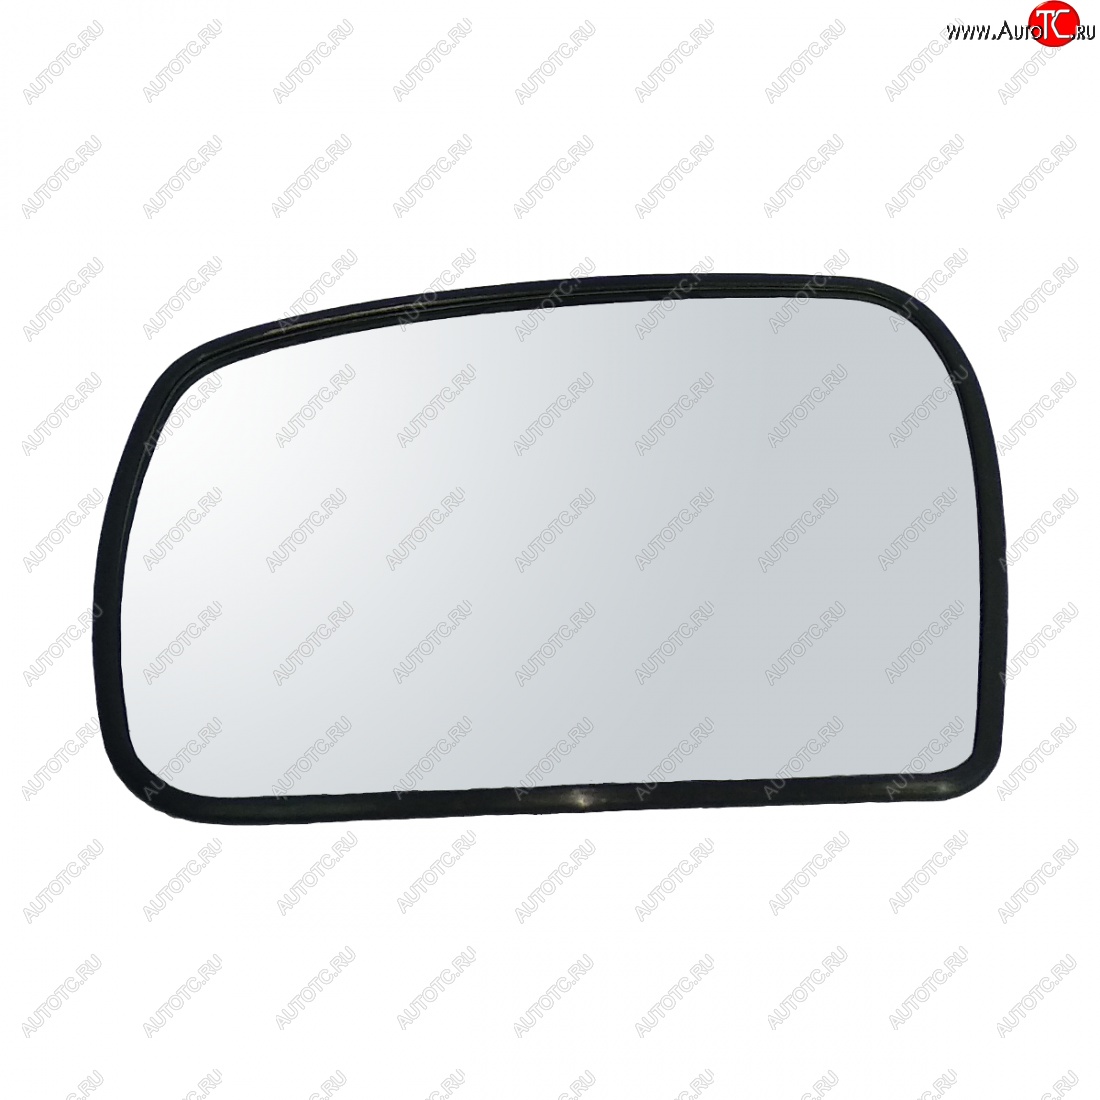 589 р. Левый зеркальный элемент (обогрев/под квадр.моторедуктор) AutoBlik2  Chevrolet Niva  2123 (2009-2020) (с антибликовым покрытием)